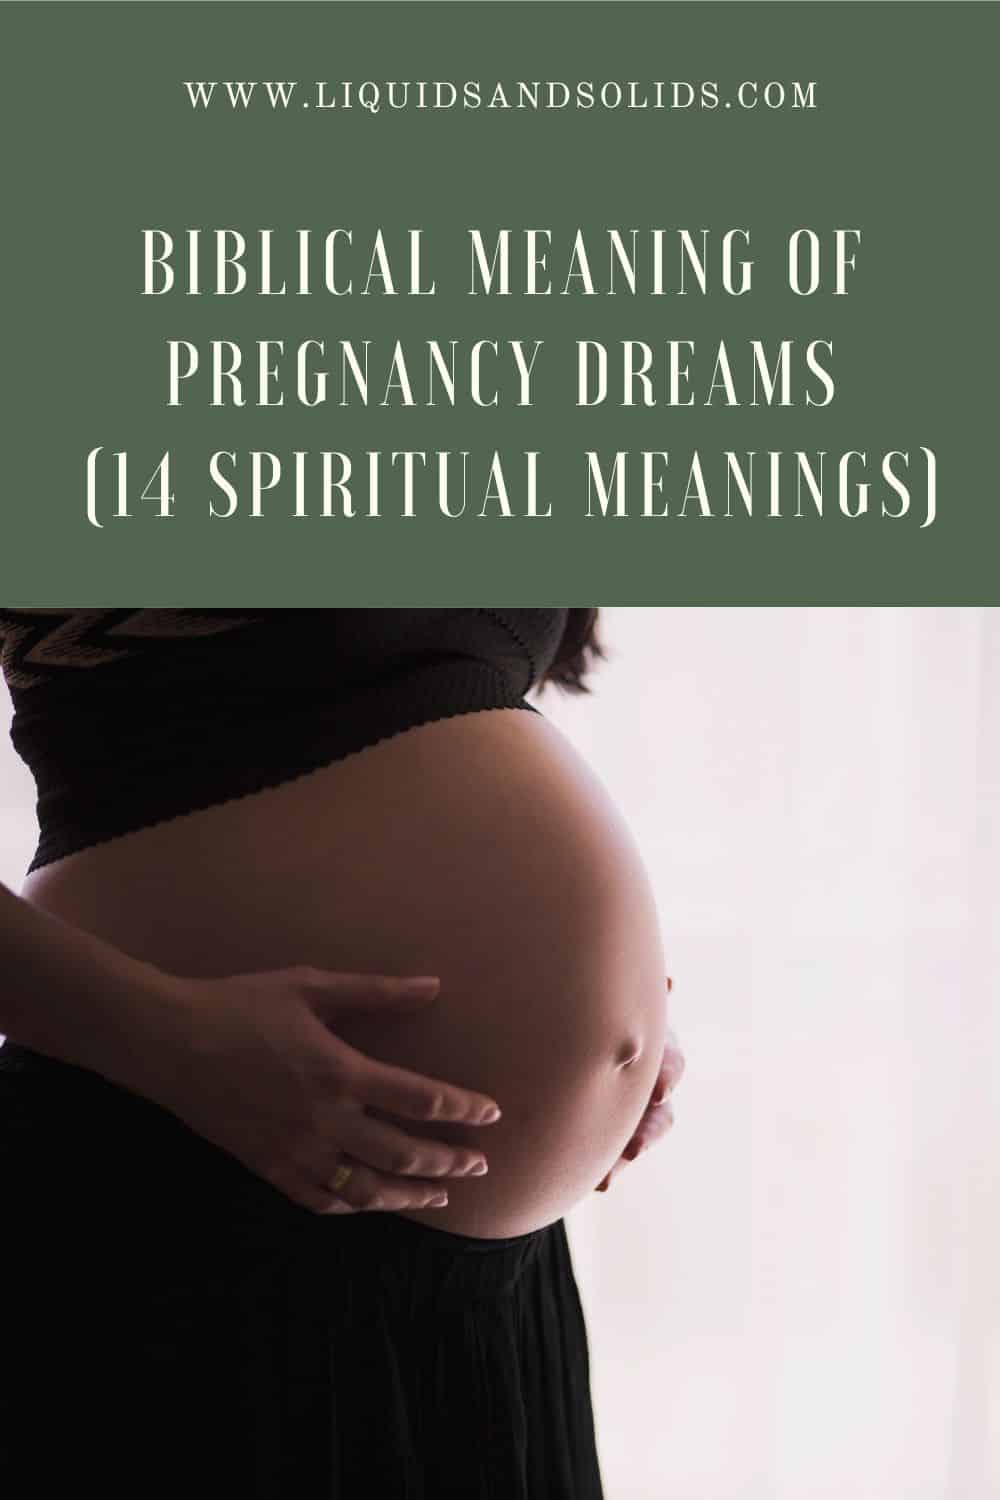  A terhességi álmok bibliai jelentése (14 spirituális jelentés)